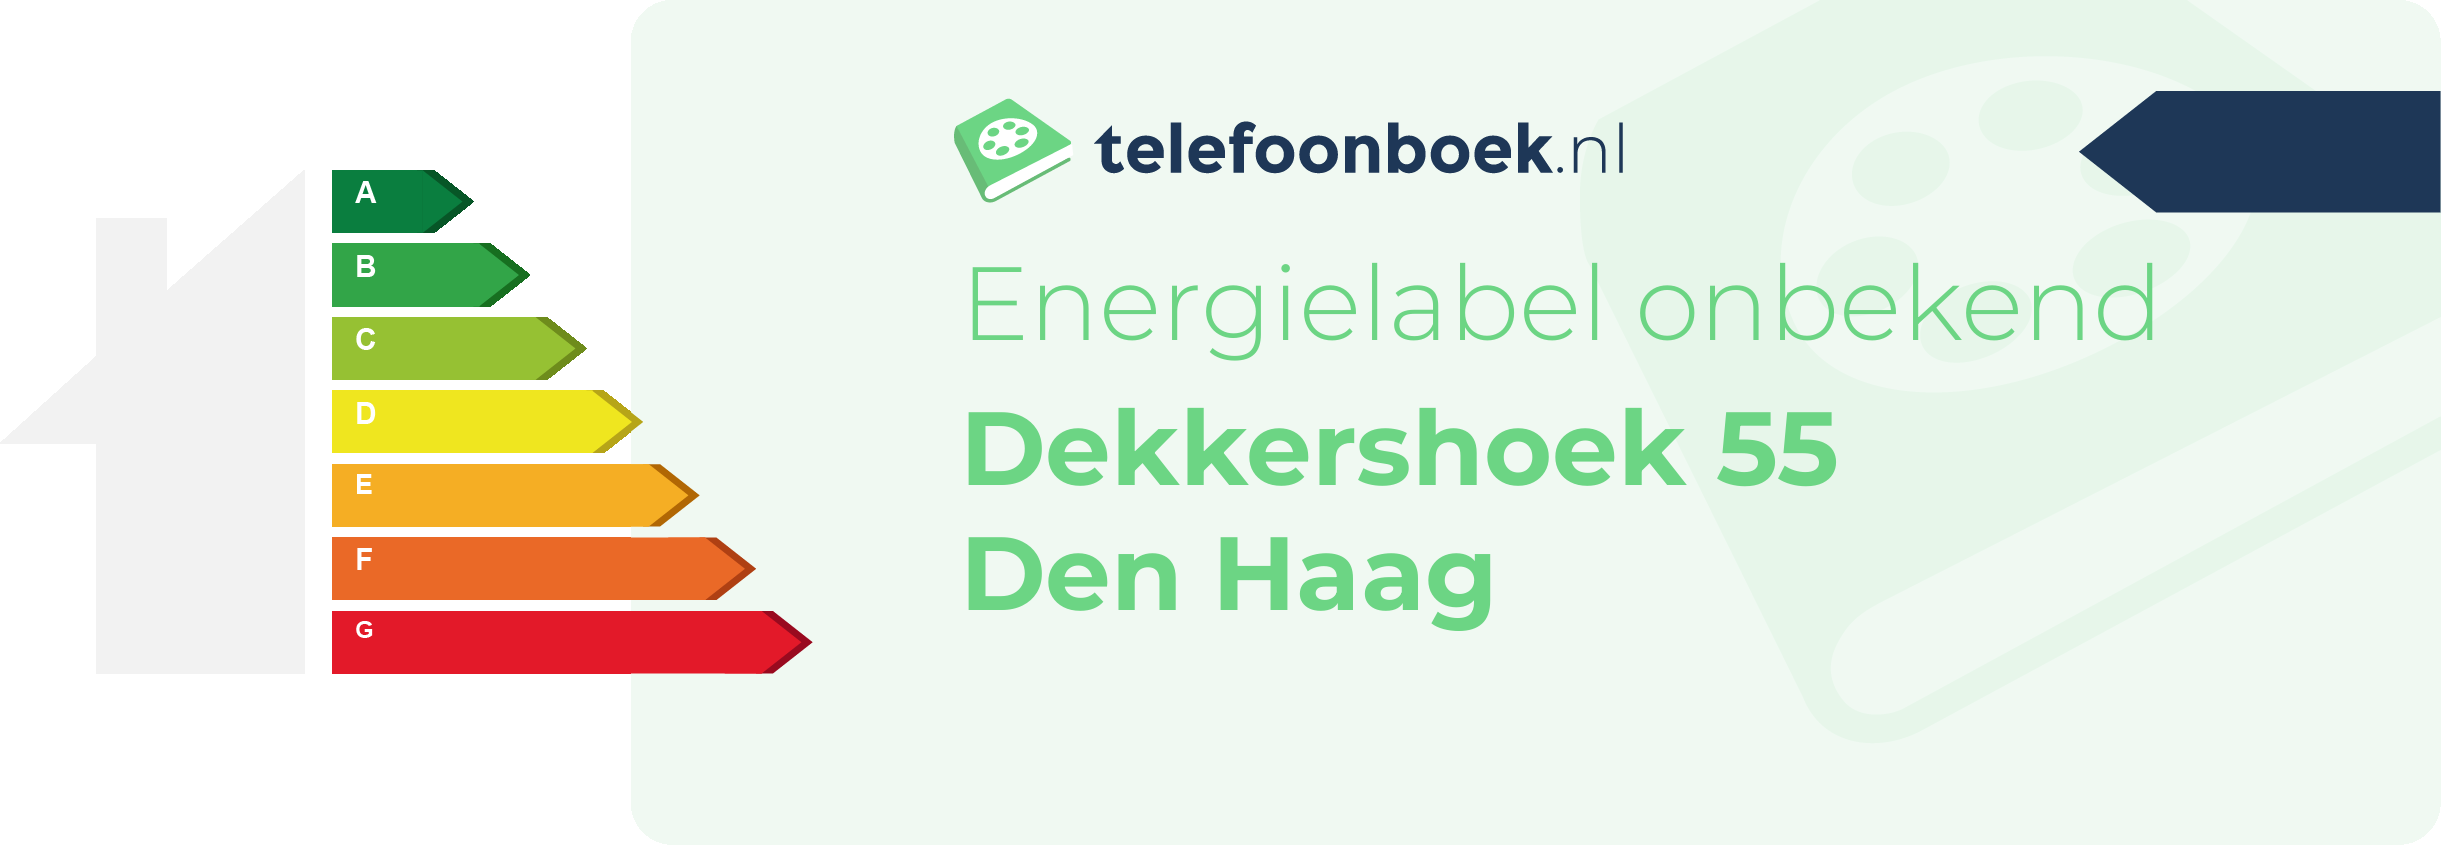 Energielabel Dekkershoek 55 Den Haag